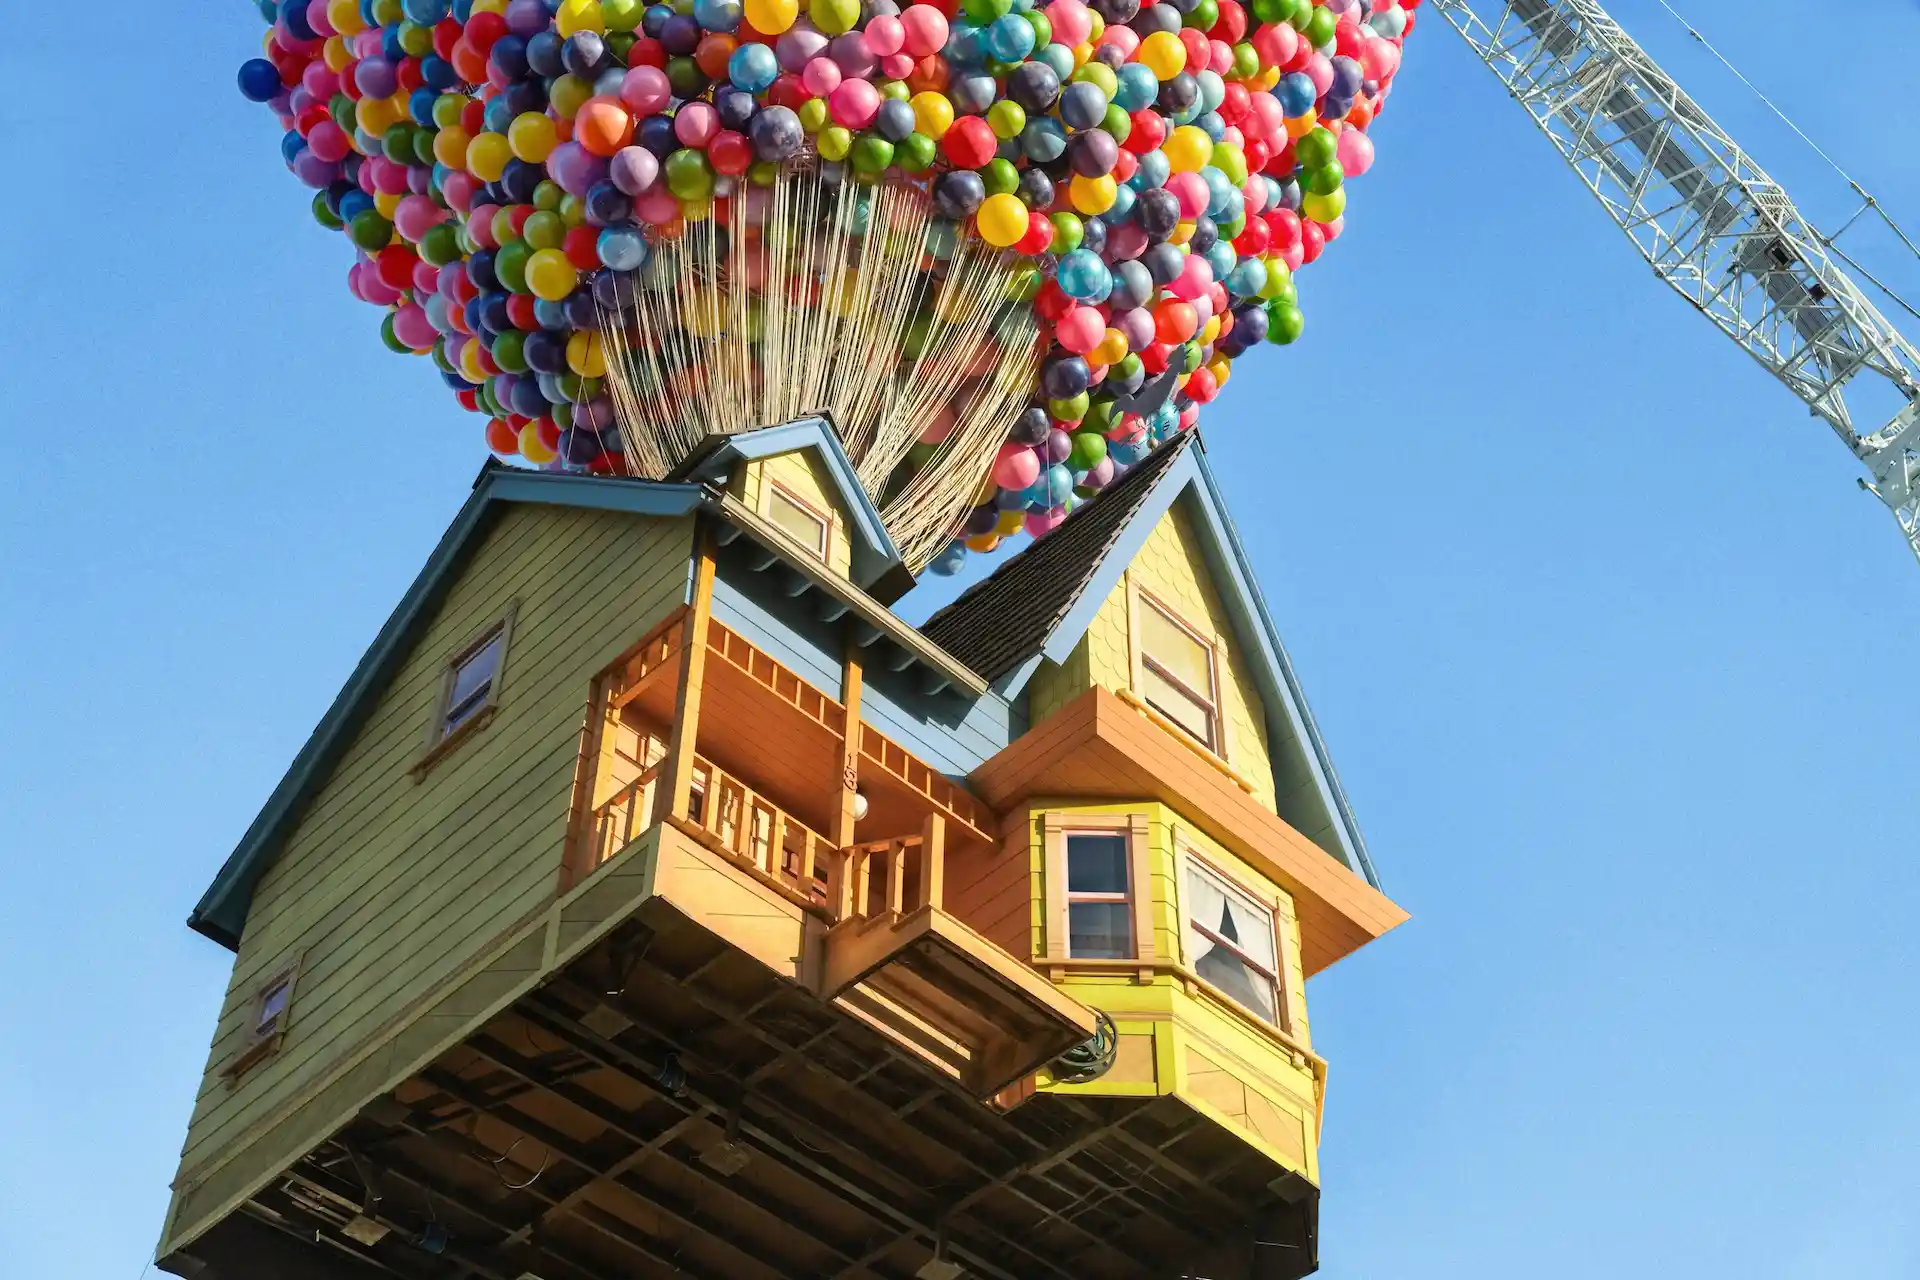 Icónicos: Airbnb permite reservar la casa de la película Up